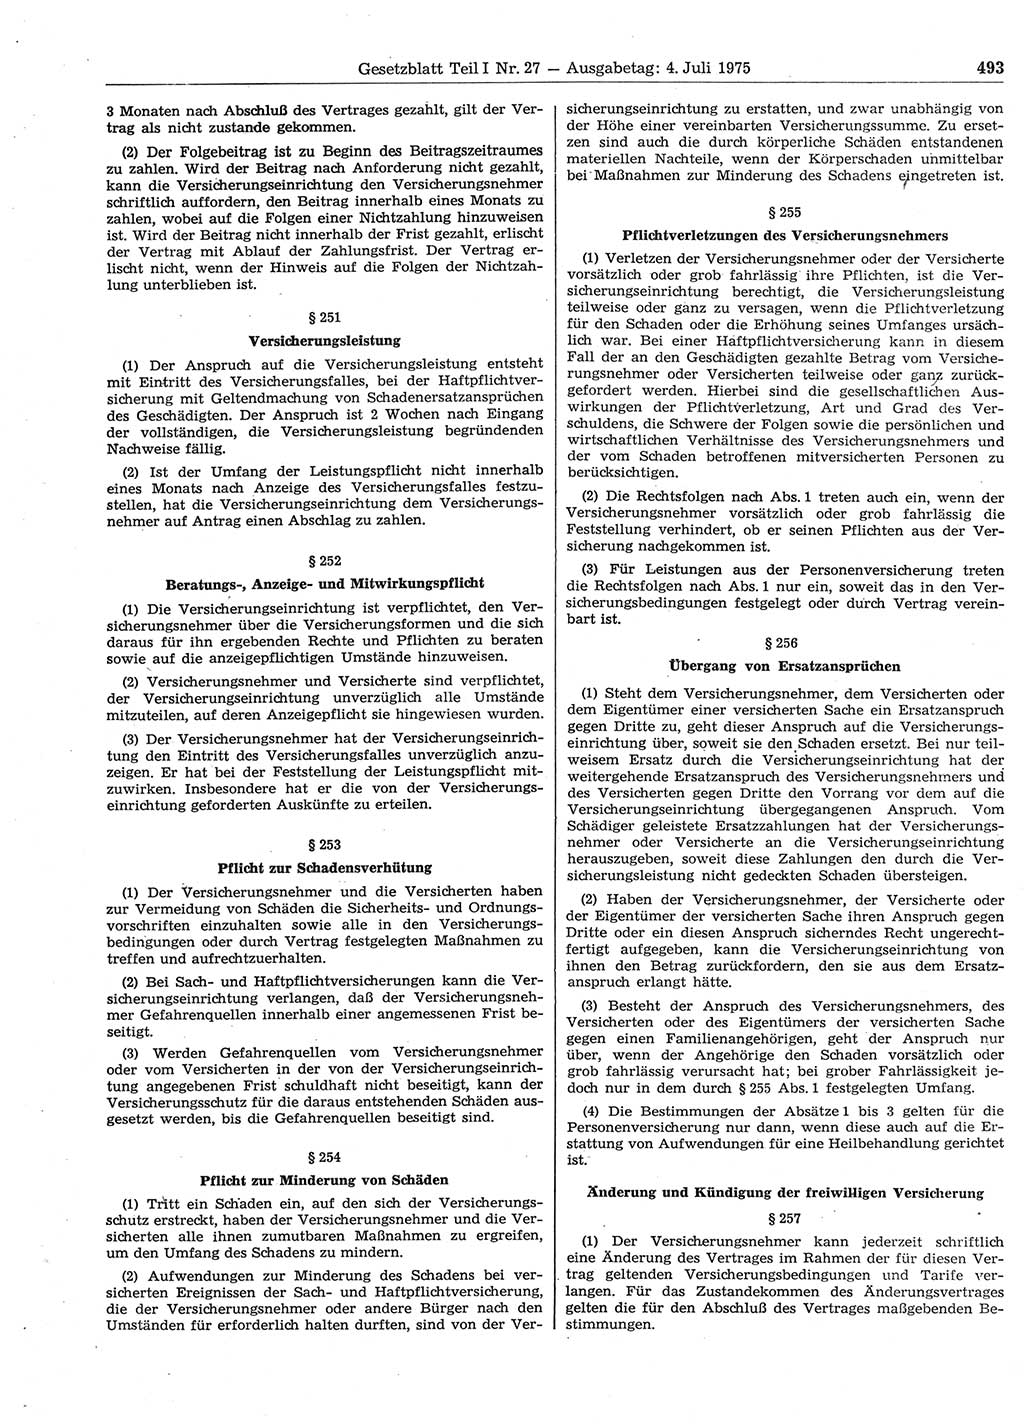 Gesetzblatt (GBl.) der Deutschen Demokratischen Republik (DDR) Teil Ⅰ 1975, Seite 493 (GBl. DDR Ⅰ 1975, S. 493)